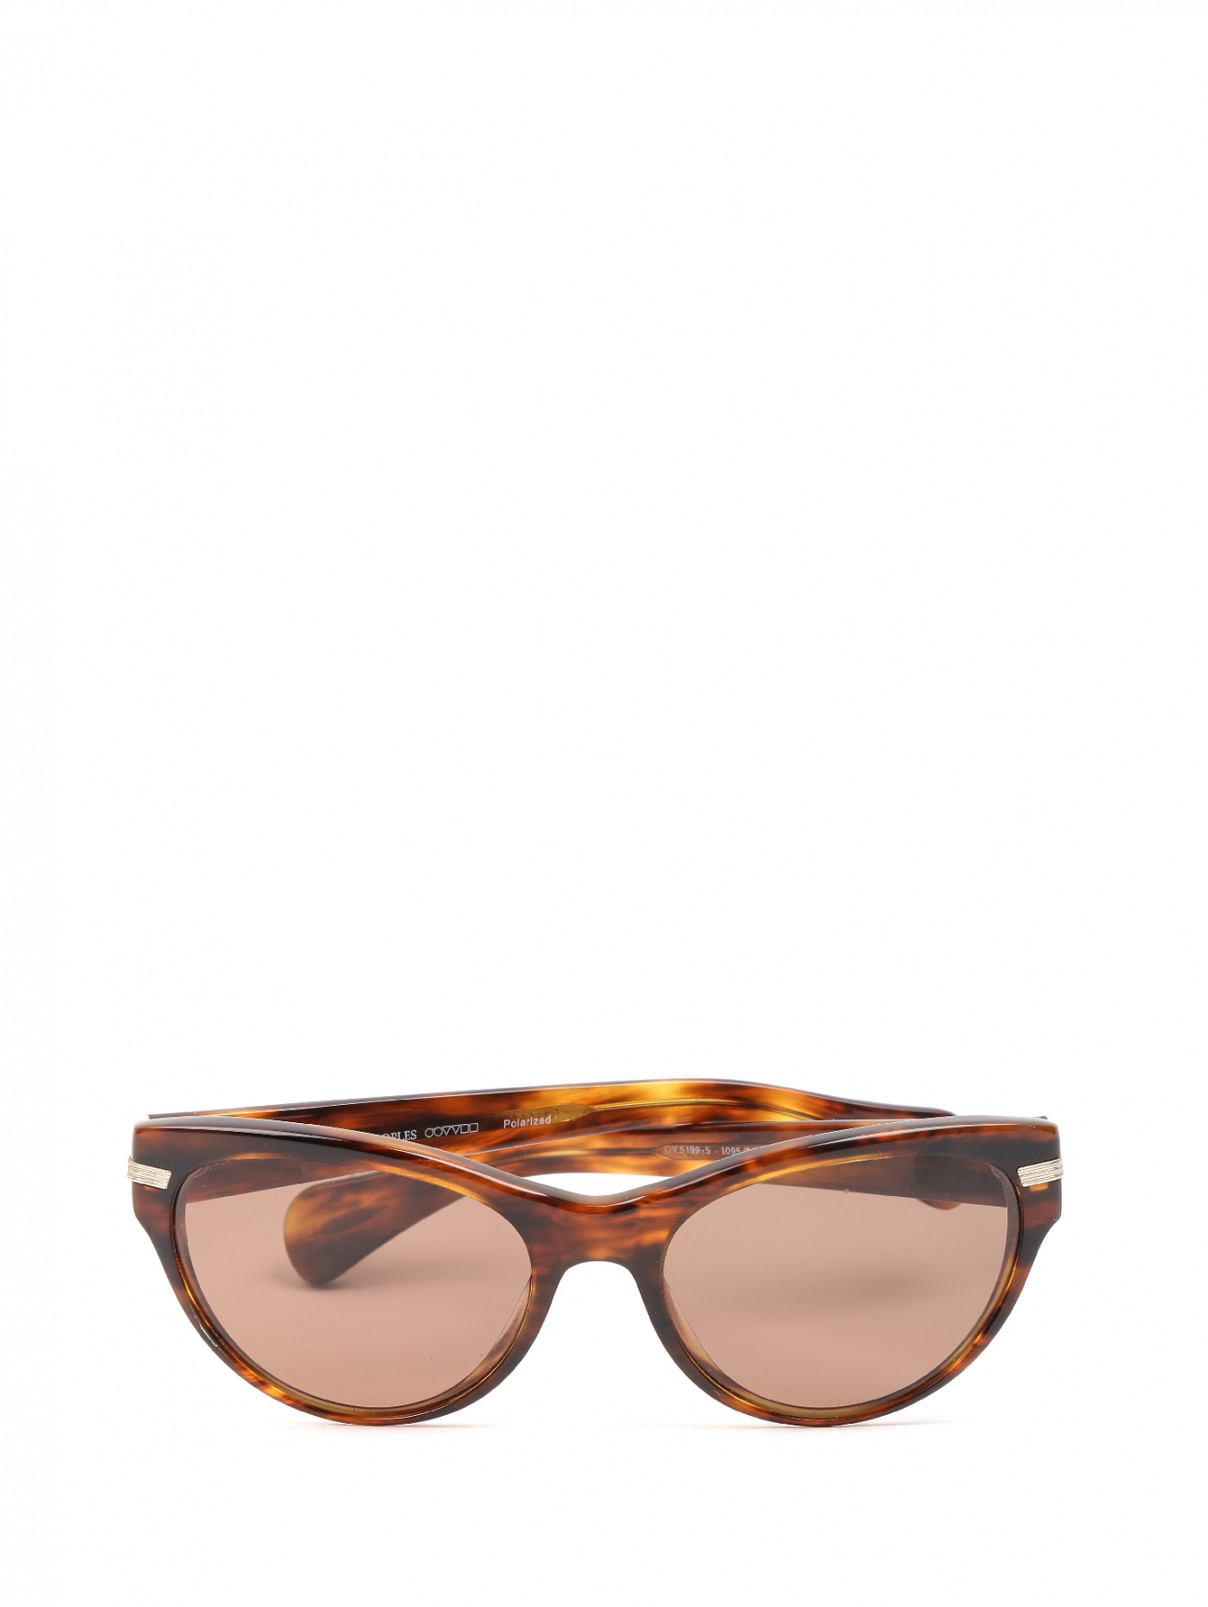 Солнцезащитные очки в пластиковой оправе с узором Oliver Peoples  –  Общий вид  – Цвет:  Коричневый